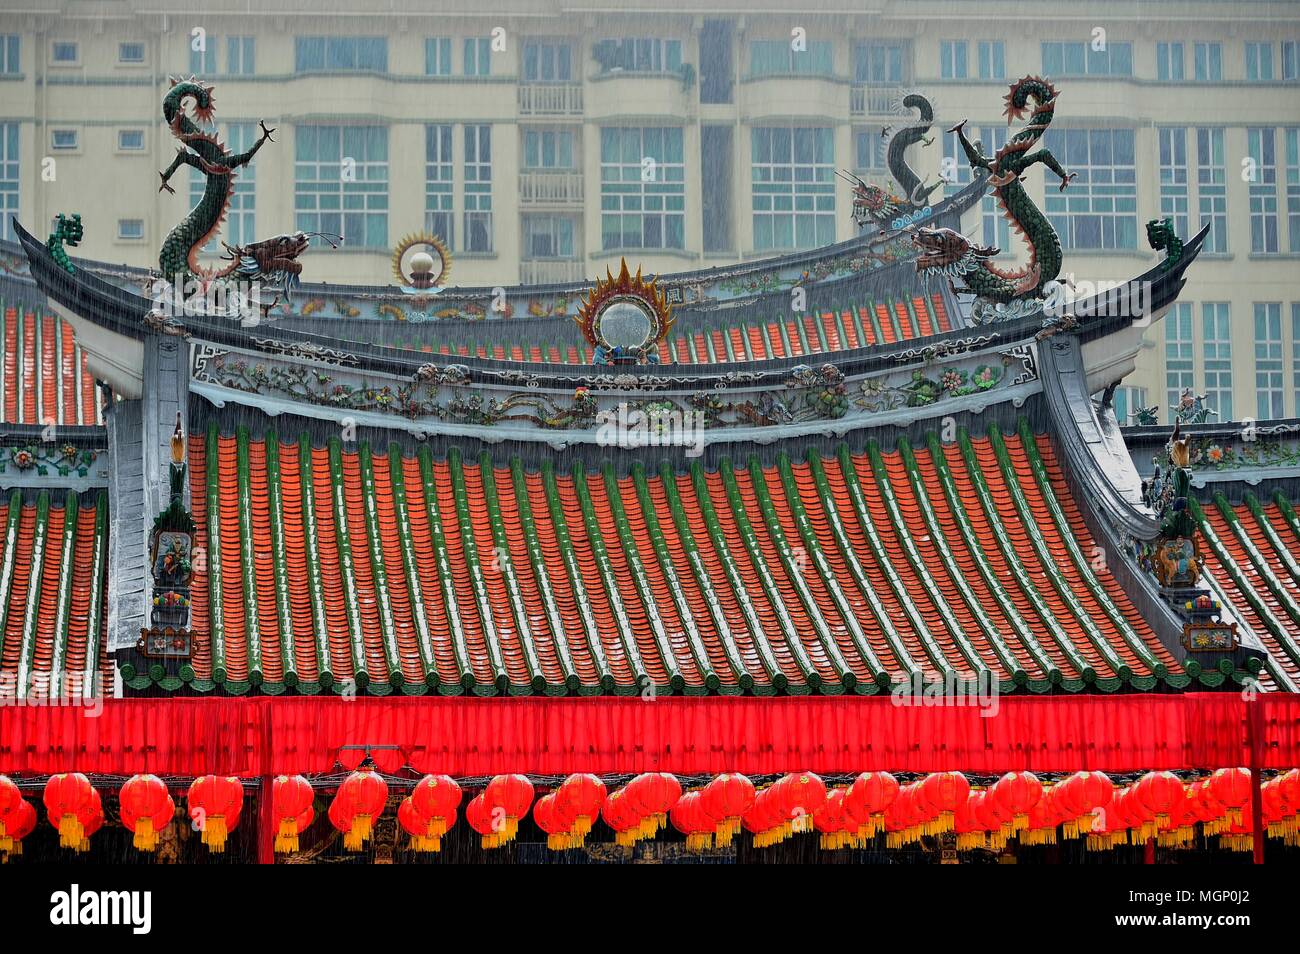 Vorderansicht des berühmten alten chinesischen buddhistischen oder taoistischen Tempel Dach mit ornamentalen Schnitzereien und roten Laternen im Regen in der Innenstadt von Singapur Stockfoto